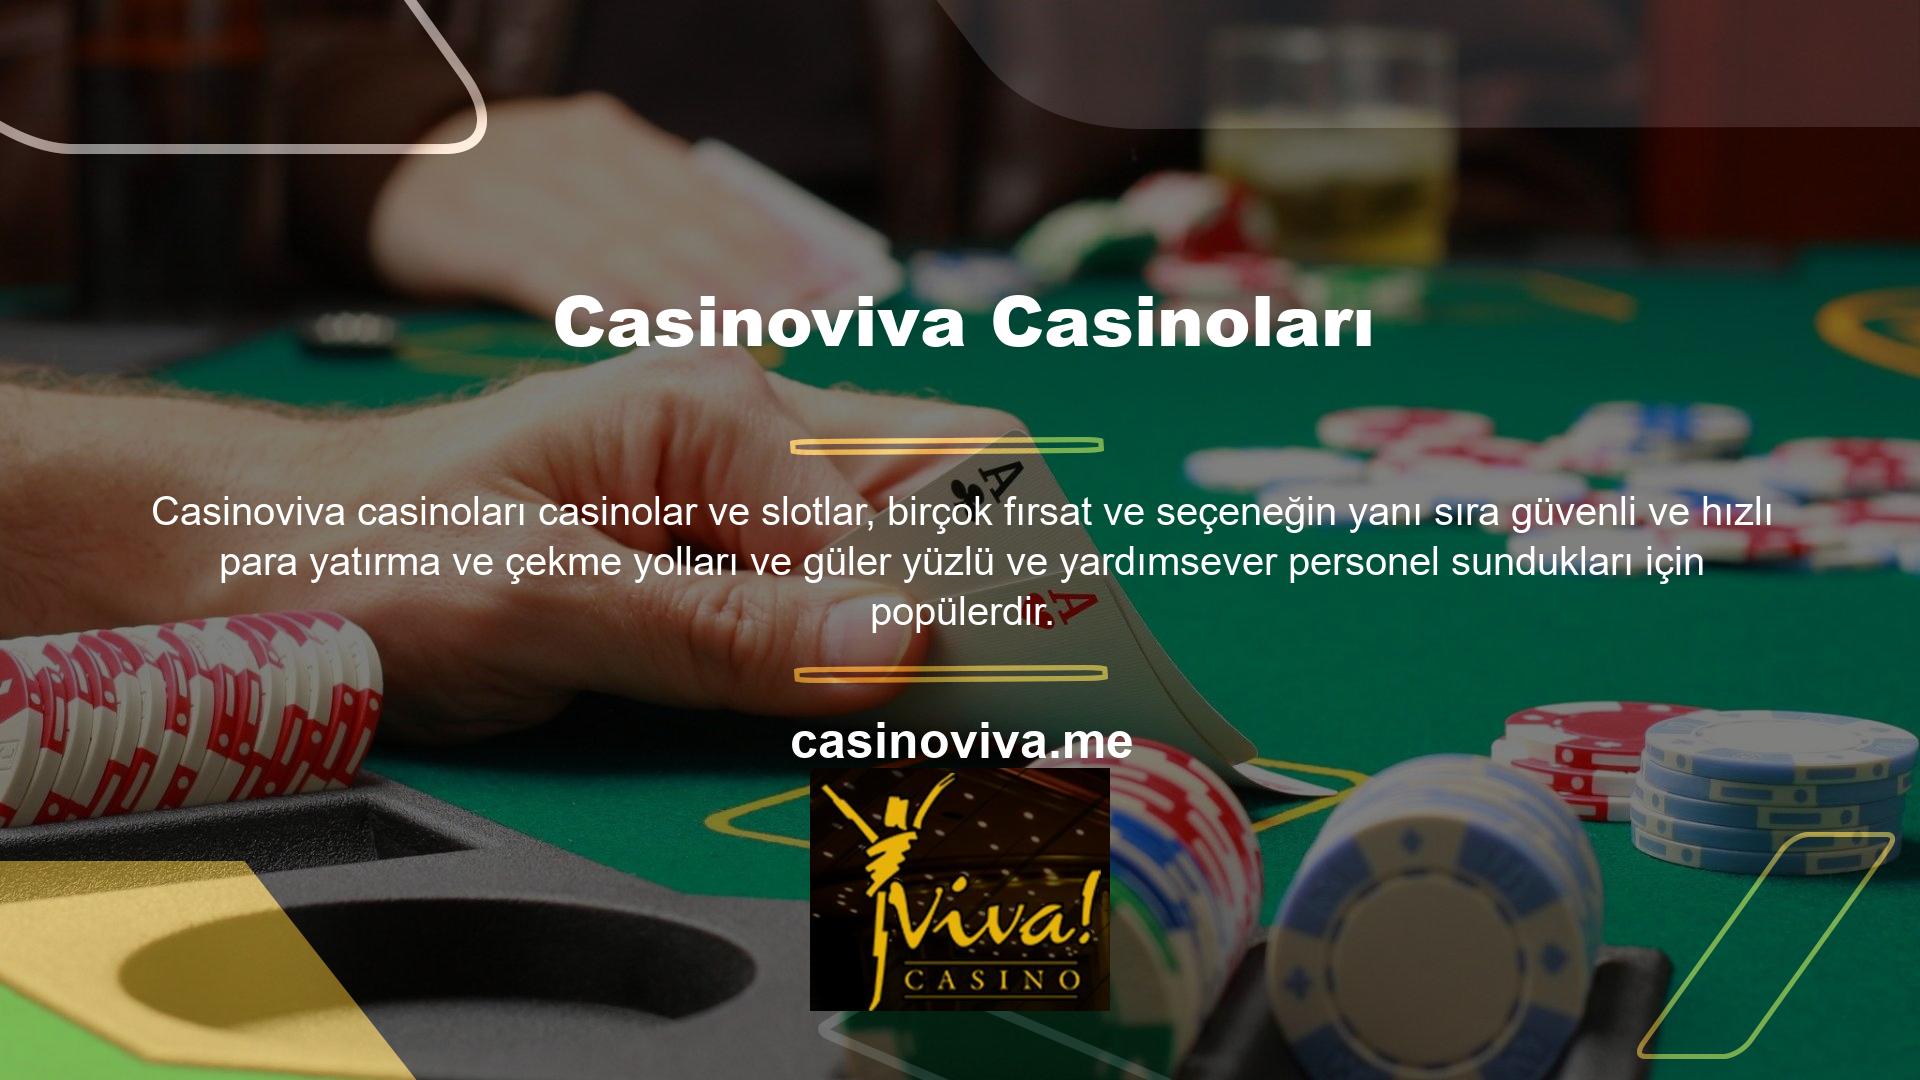 Casinoviva alternatif bir yaklaşım olarak Papara yöntemini öneriyorGüvenilirliği ve hızlılığıyla tanınan Casinoviva, müşterilerine mevduatlarından para kazanma şansı sunmasıyla bir kez daha övgüyle karşılandı